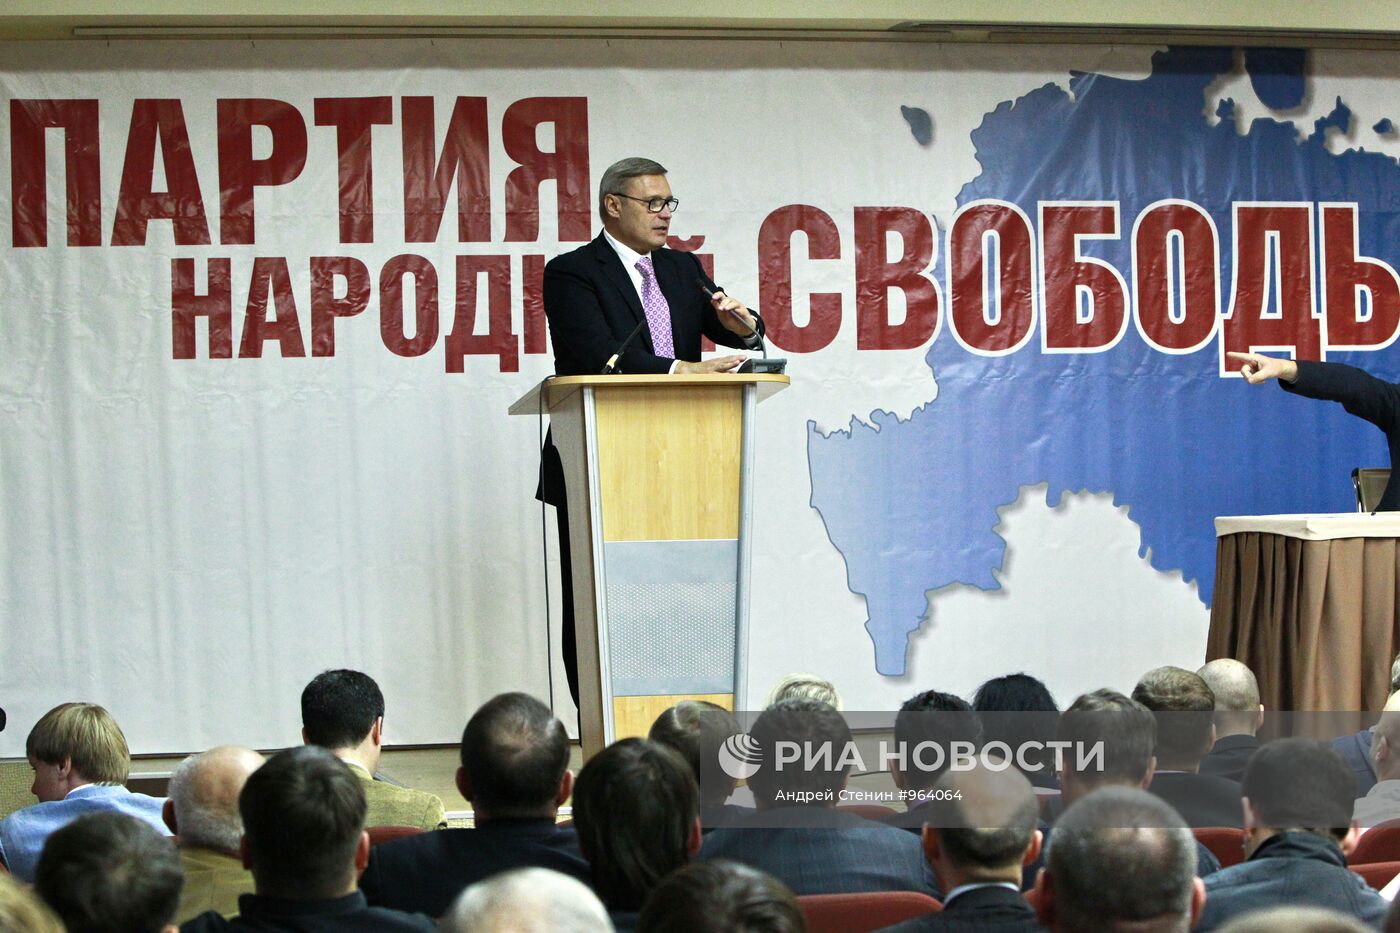 Съезд "Партии народной свободы"